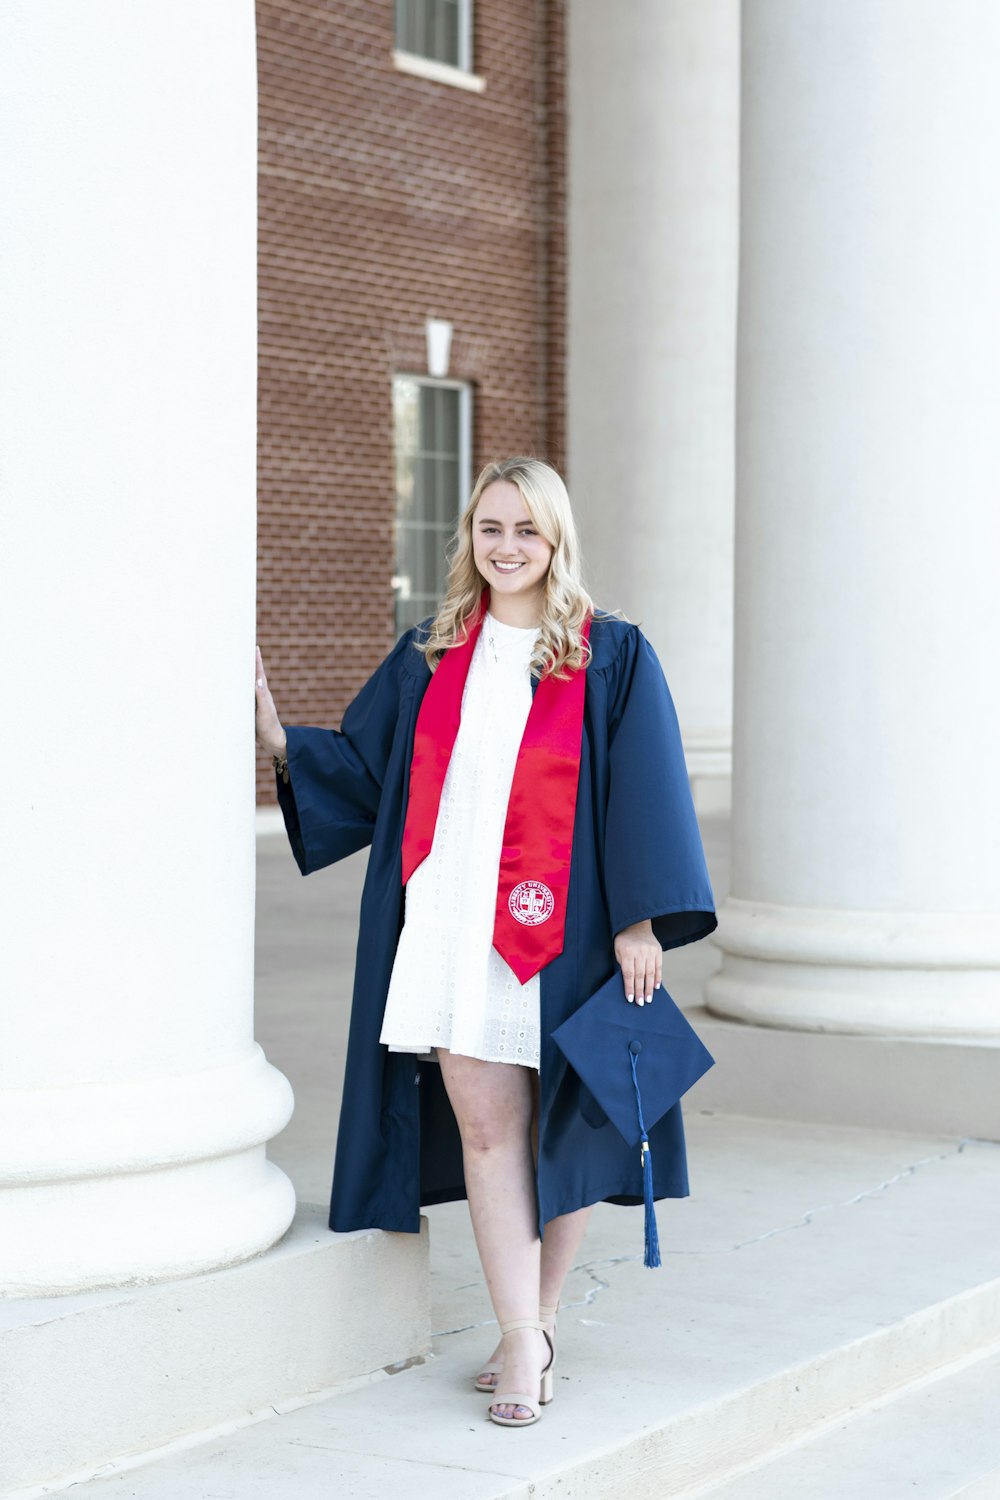 Una donna in abito da laurea è in piedi sui gradini di un edificio